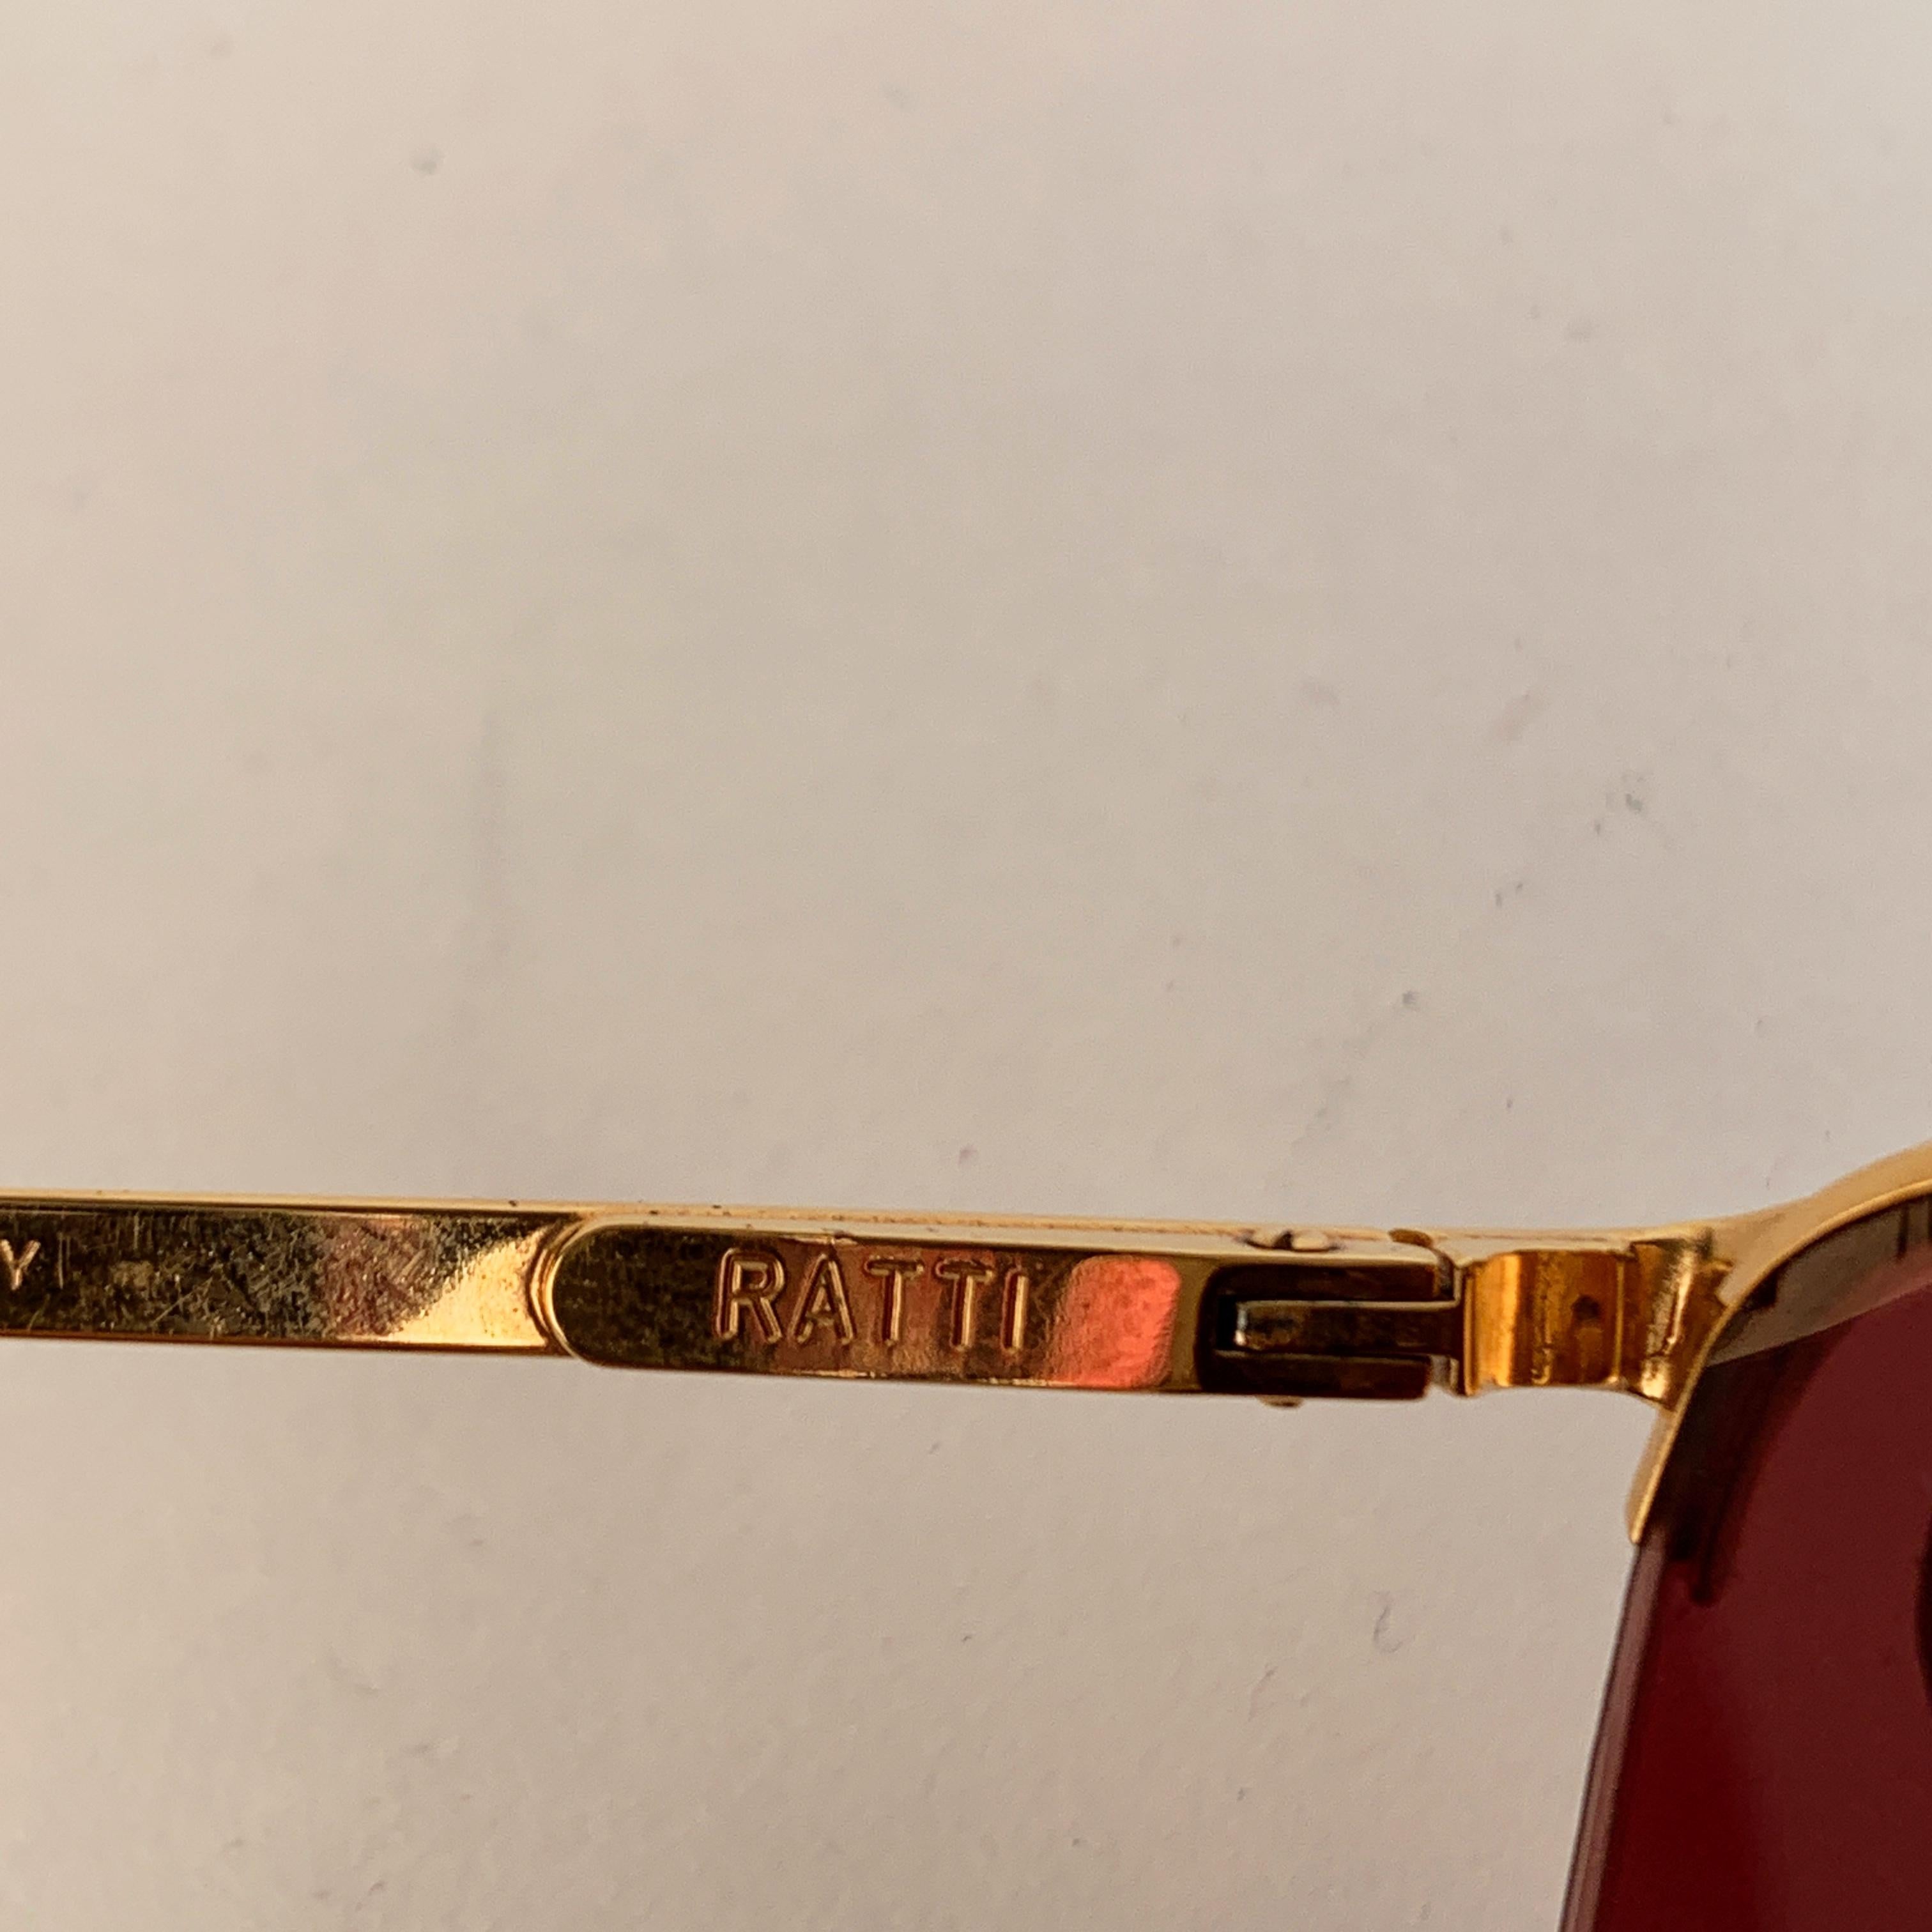 Persol Ratti Vintage Unisex Rare Flex Mint Sunglasses Mod. Alcor 4